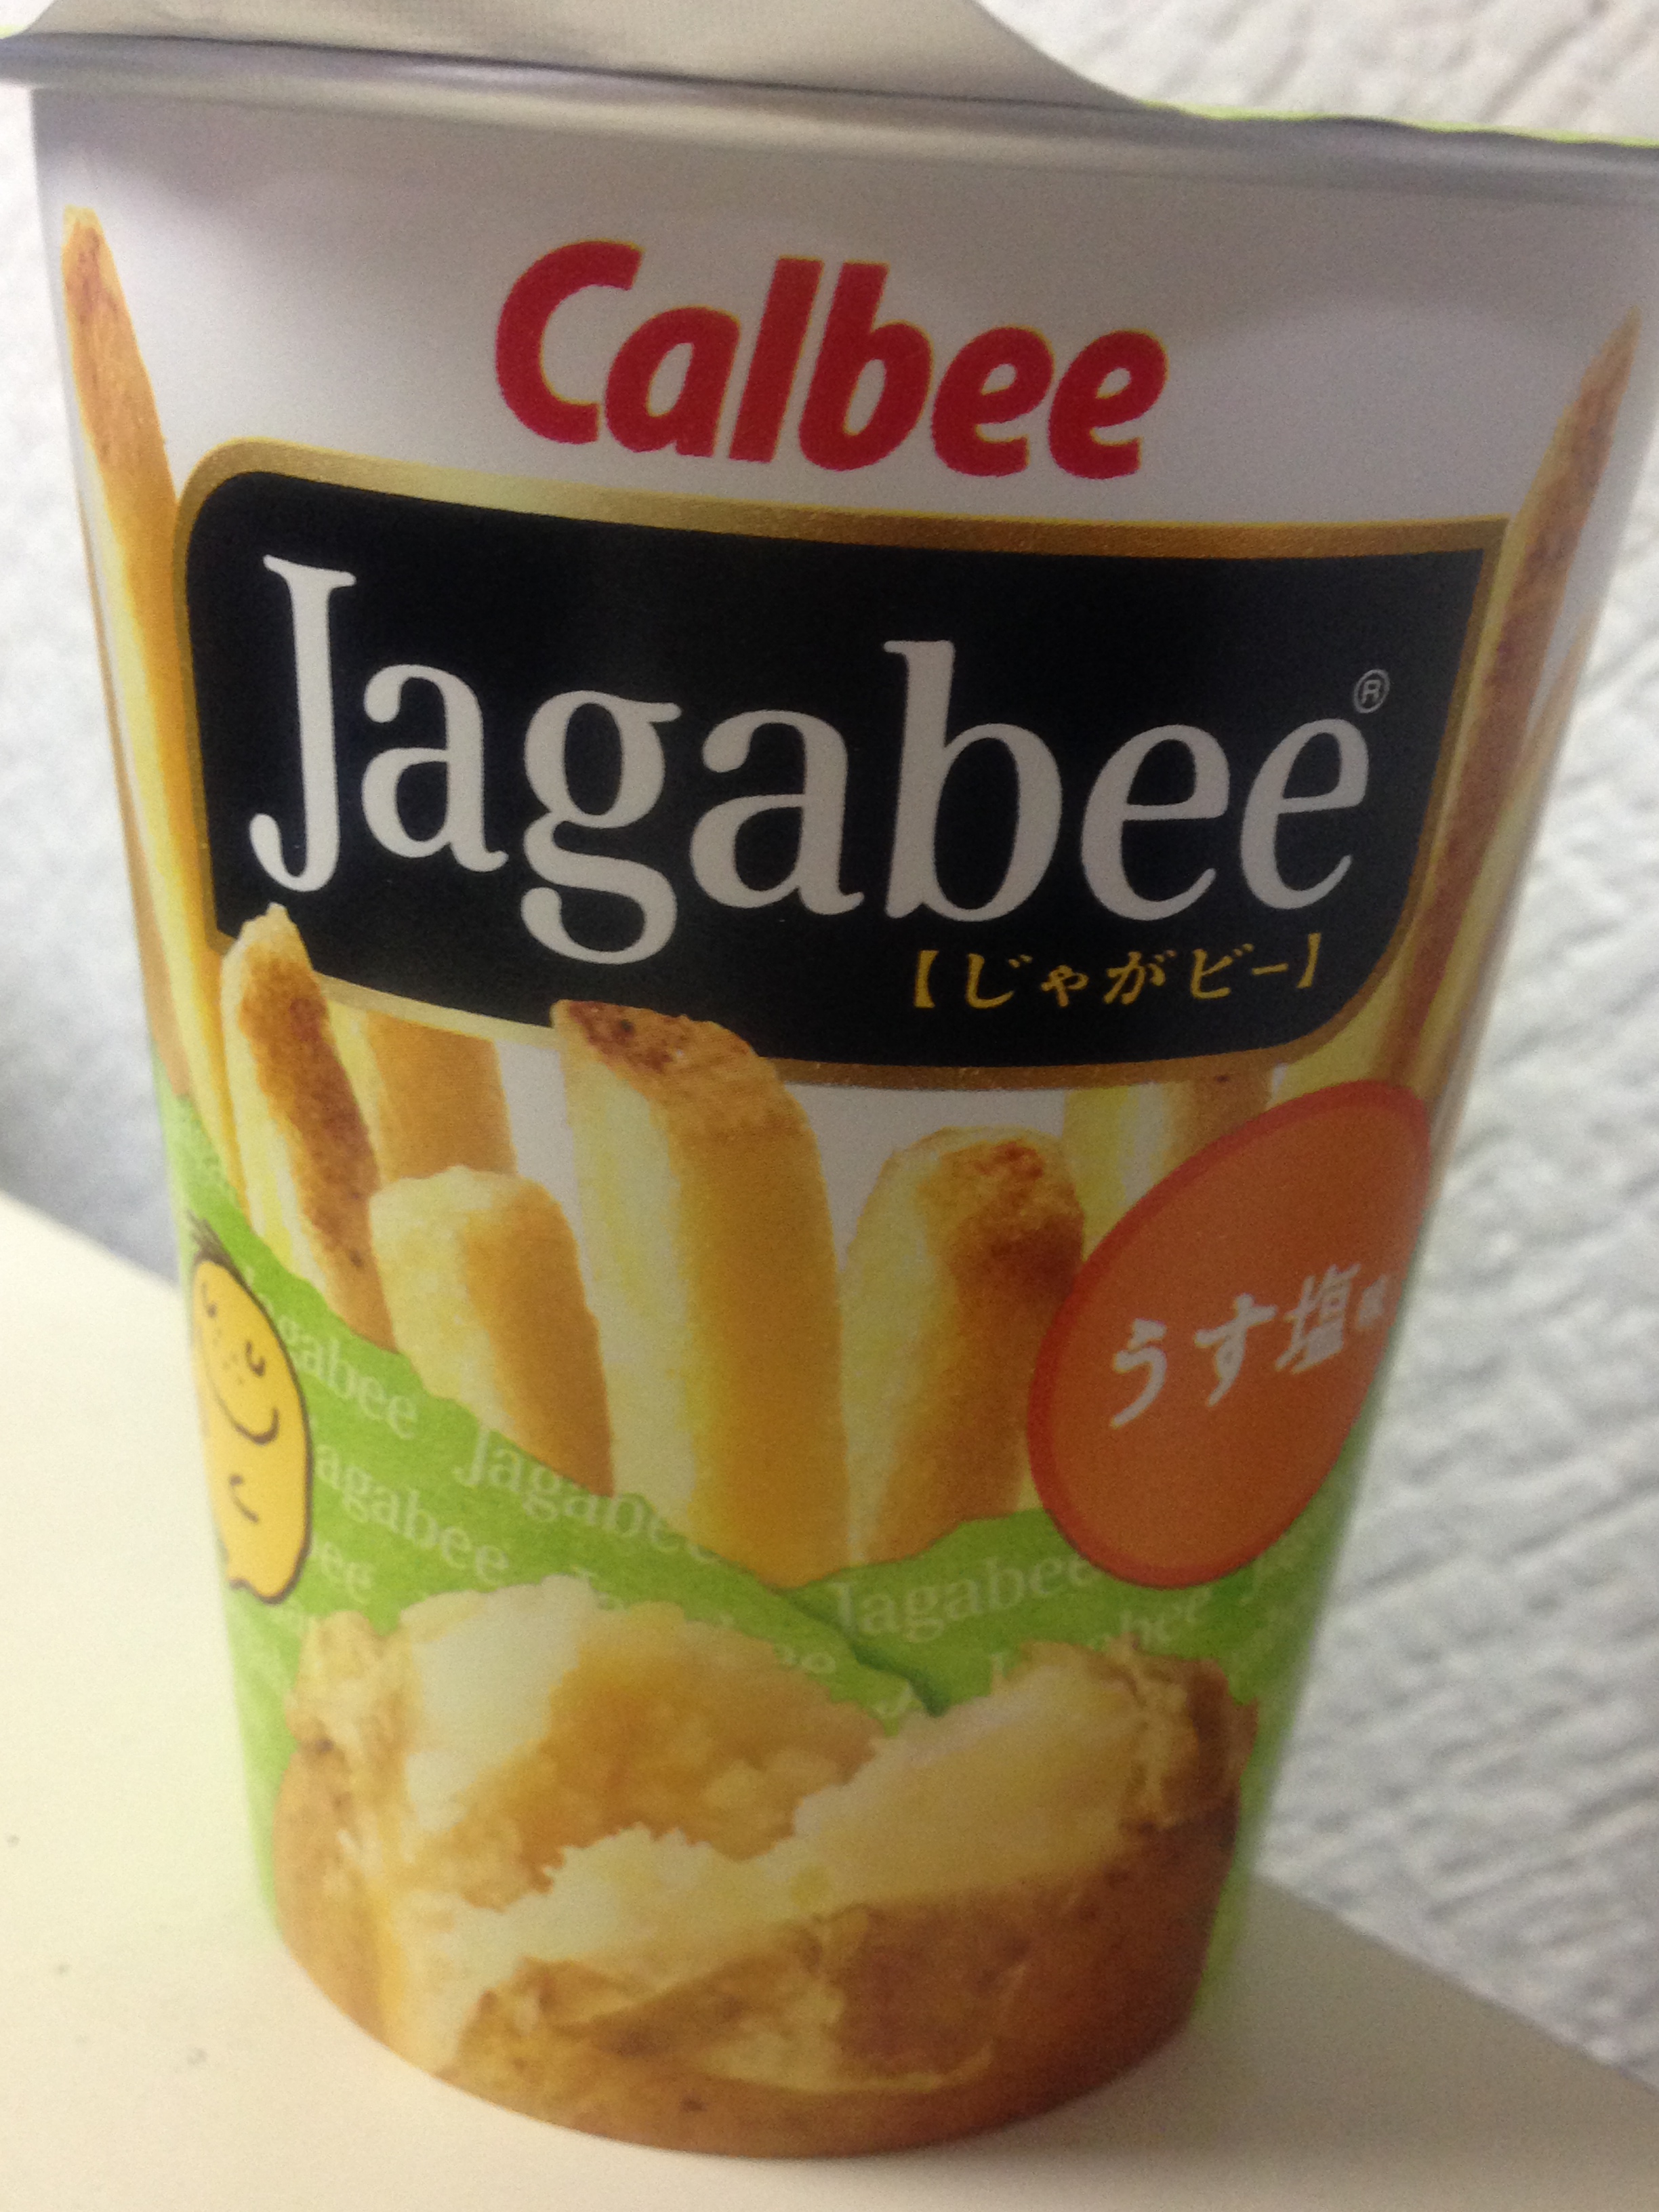 オープニング 細めウェーブJagabee じゃがビー 風味豊かなのりしお味 35g 3袋 カルビー ジャガビー スナック菓子 おつまみ 